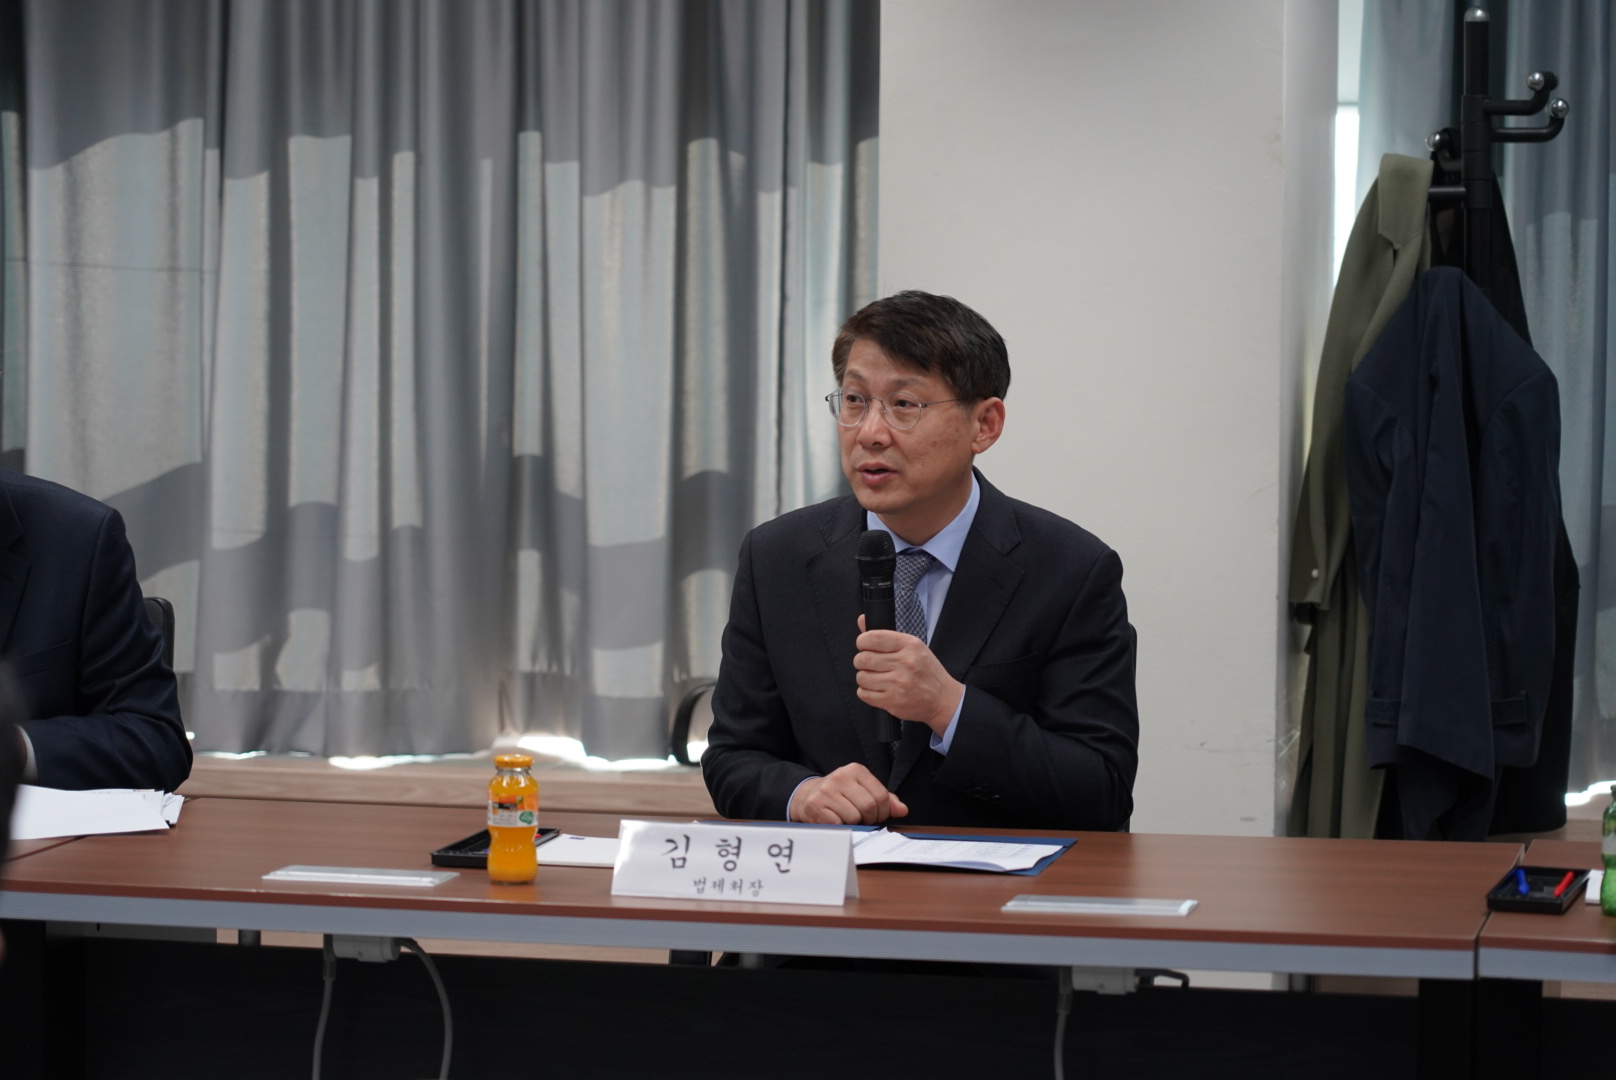 산업단지 입주기업의 개선 의견 수렴을 위한 현장간담회에 참석한 김형연 법제처장 사진1